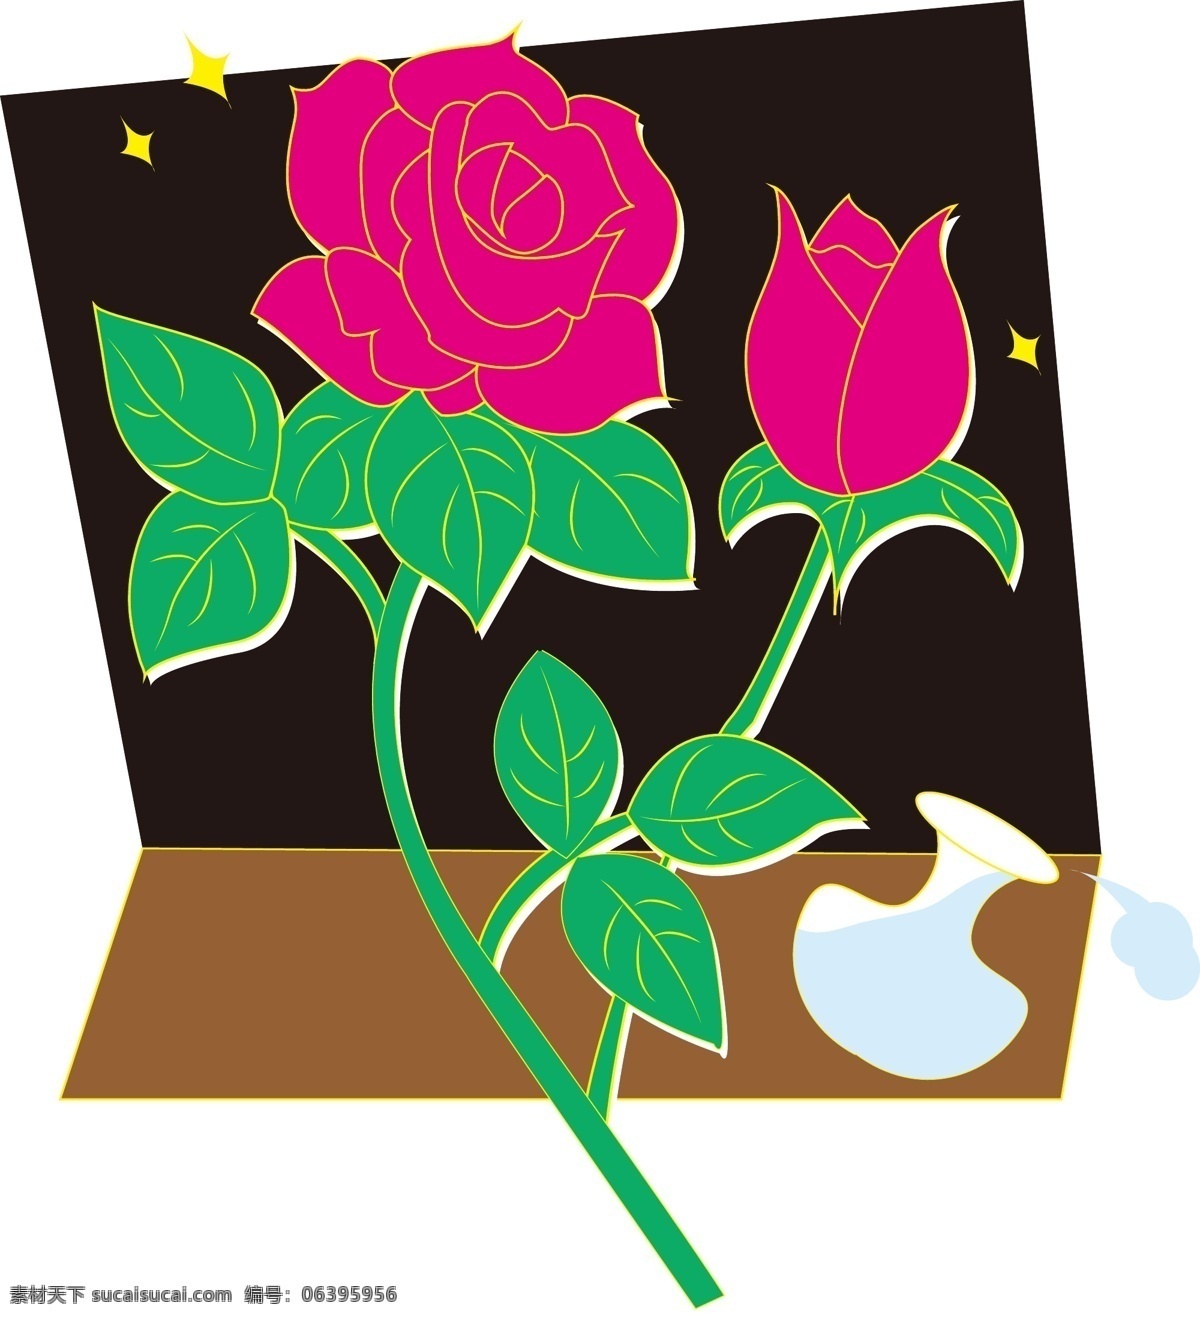 窗前 玫瑰花 装饰画 花瓶 装饰 卡通 插画风